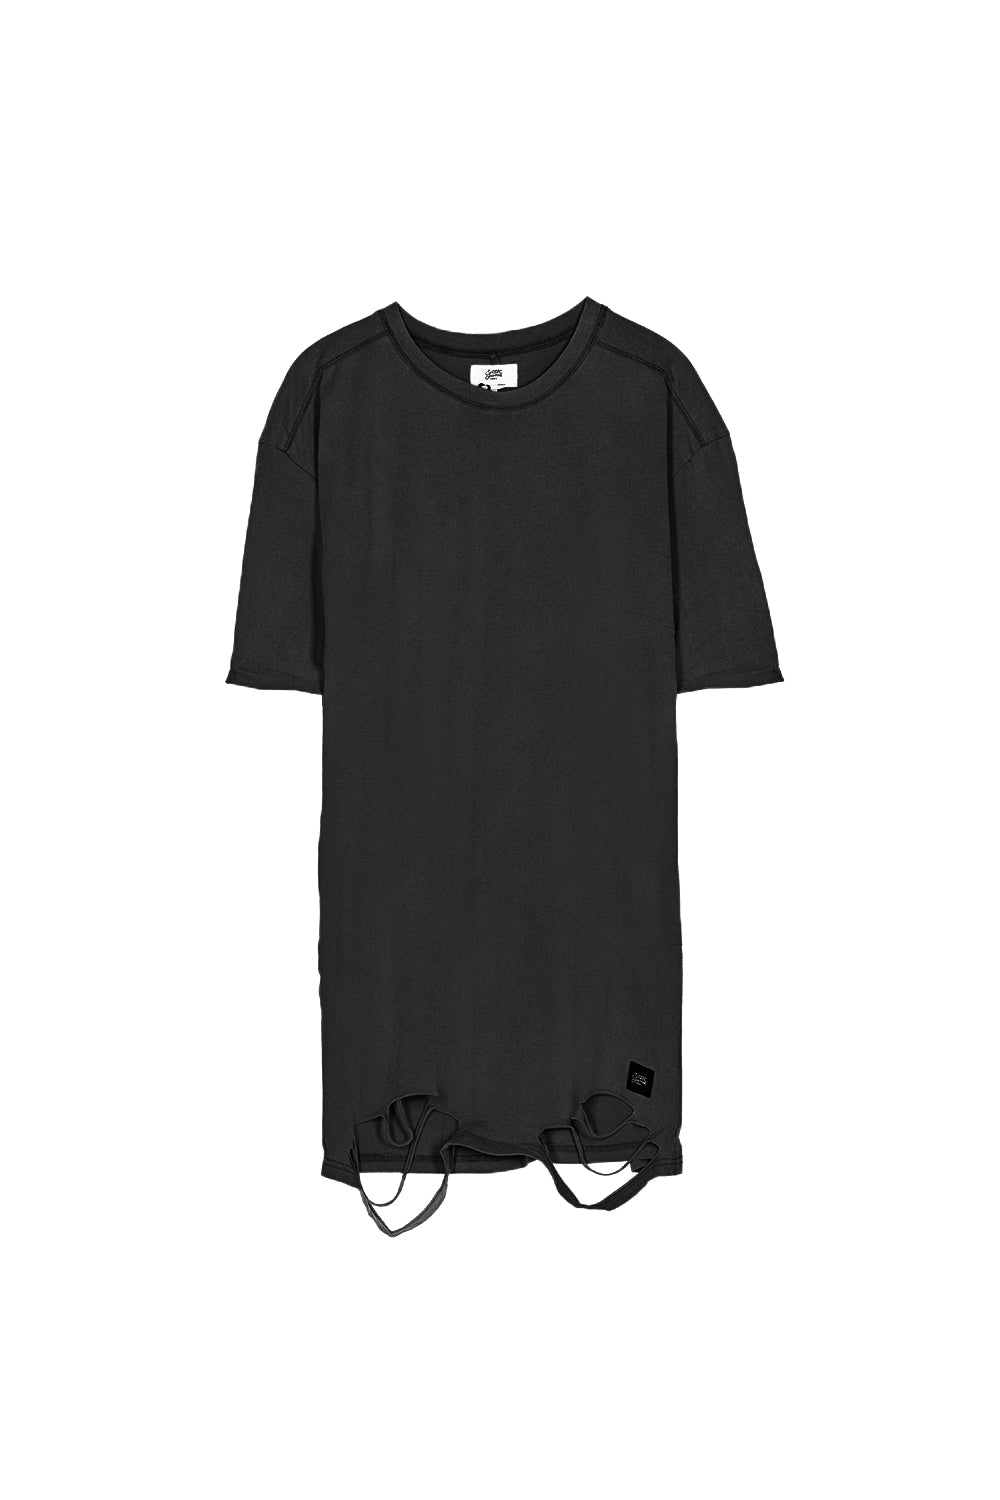 Sixth June - Robe t-shirt déchirée noire W2371VDR